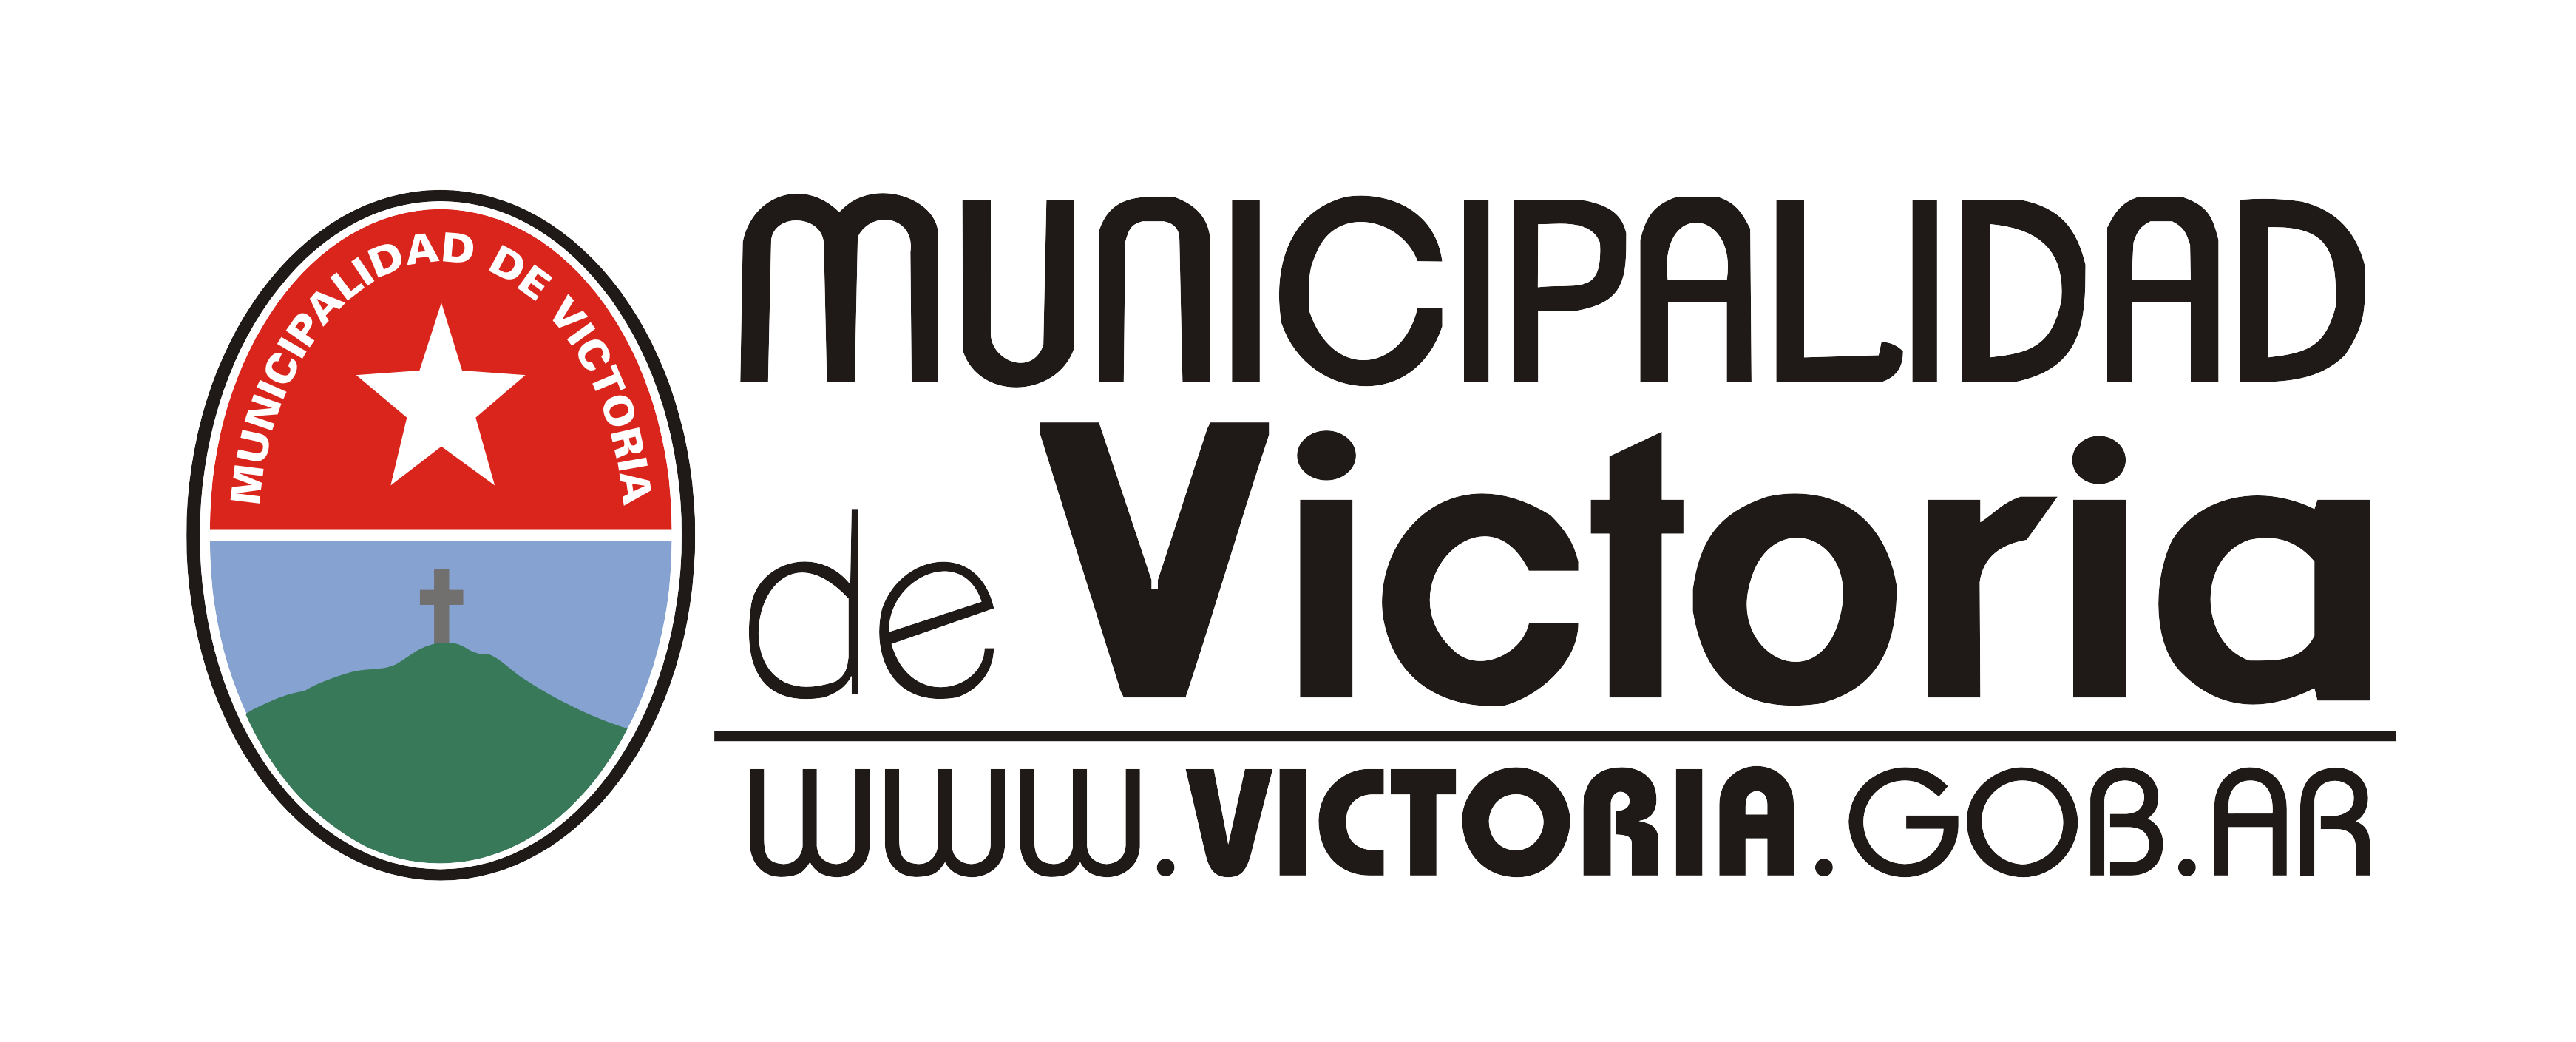 Municipalidad de Victoria